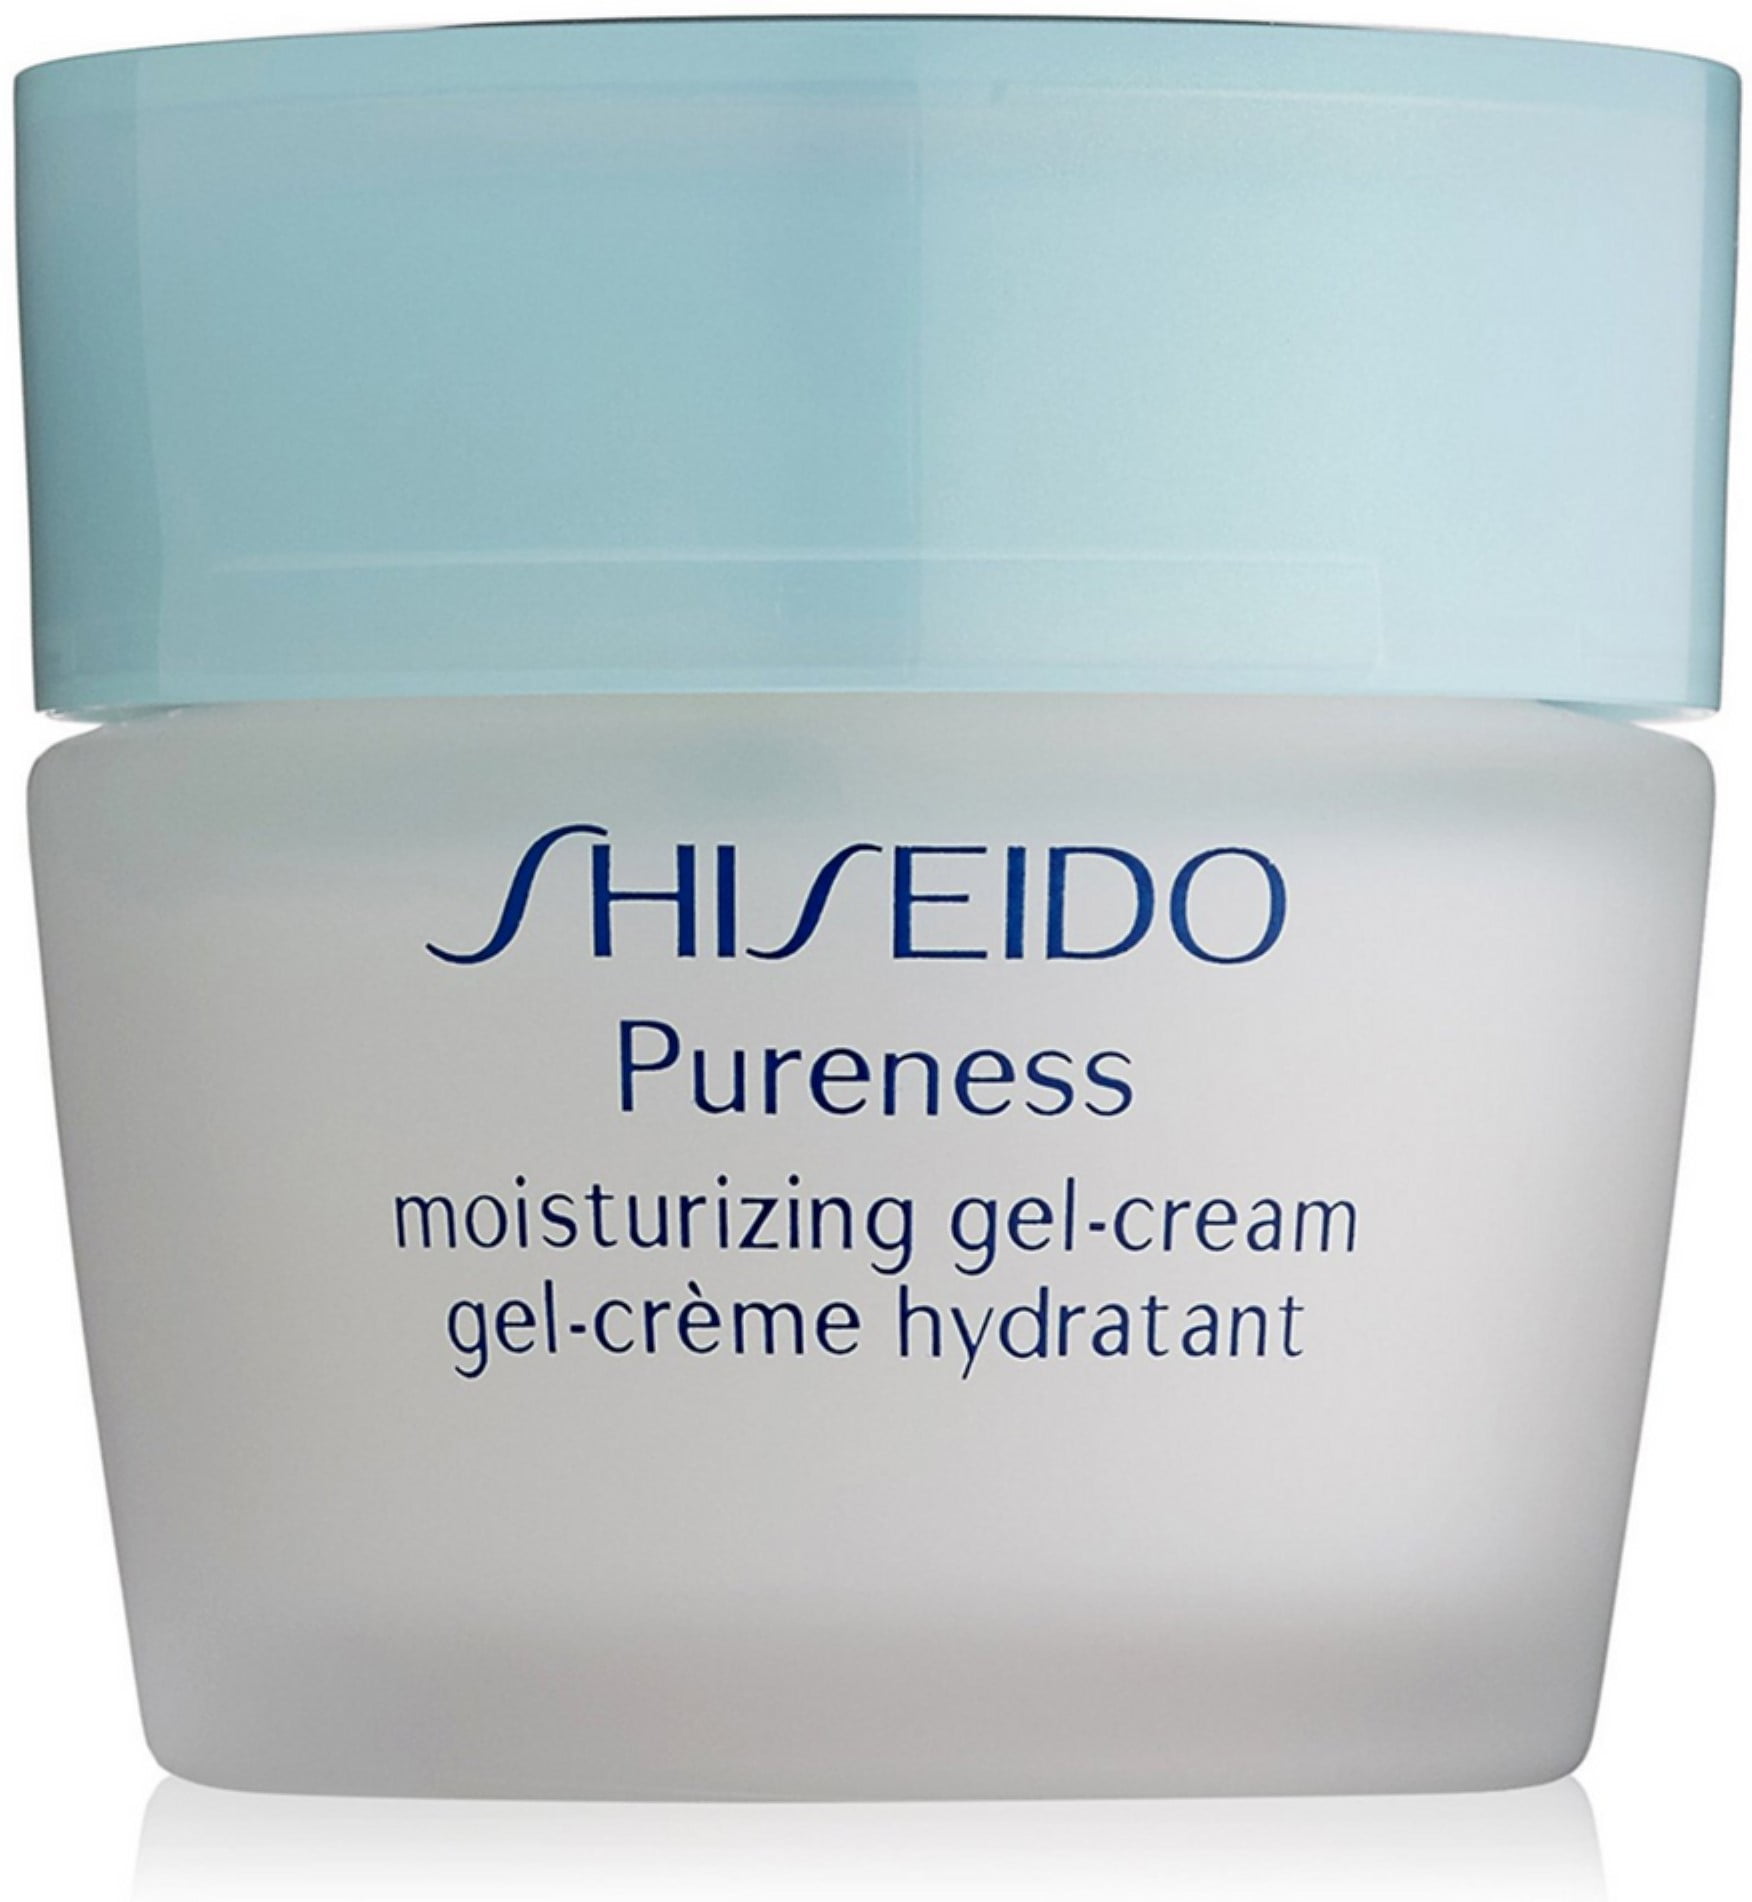 Shiseido крем для умывания. La Rose Gel Creme hydratant. Шисейдо гель для умывания фото. Shiseido увлажняющий